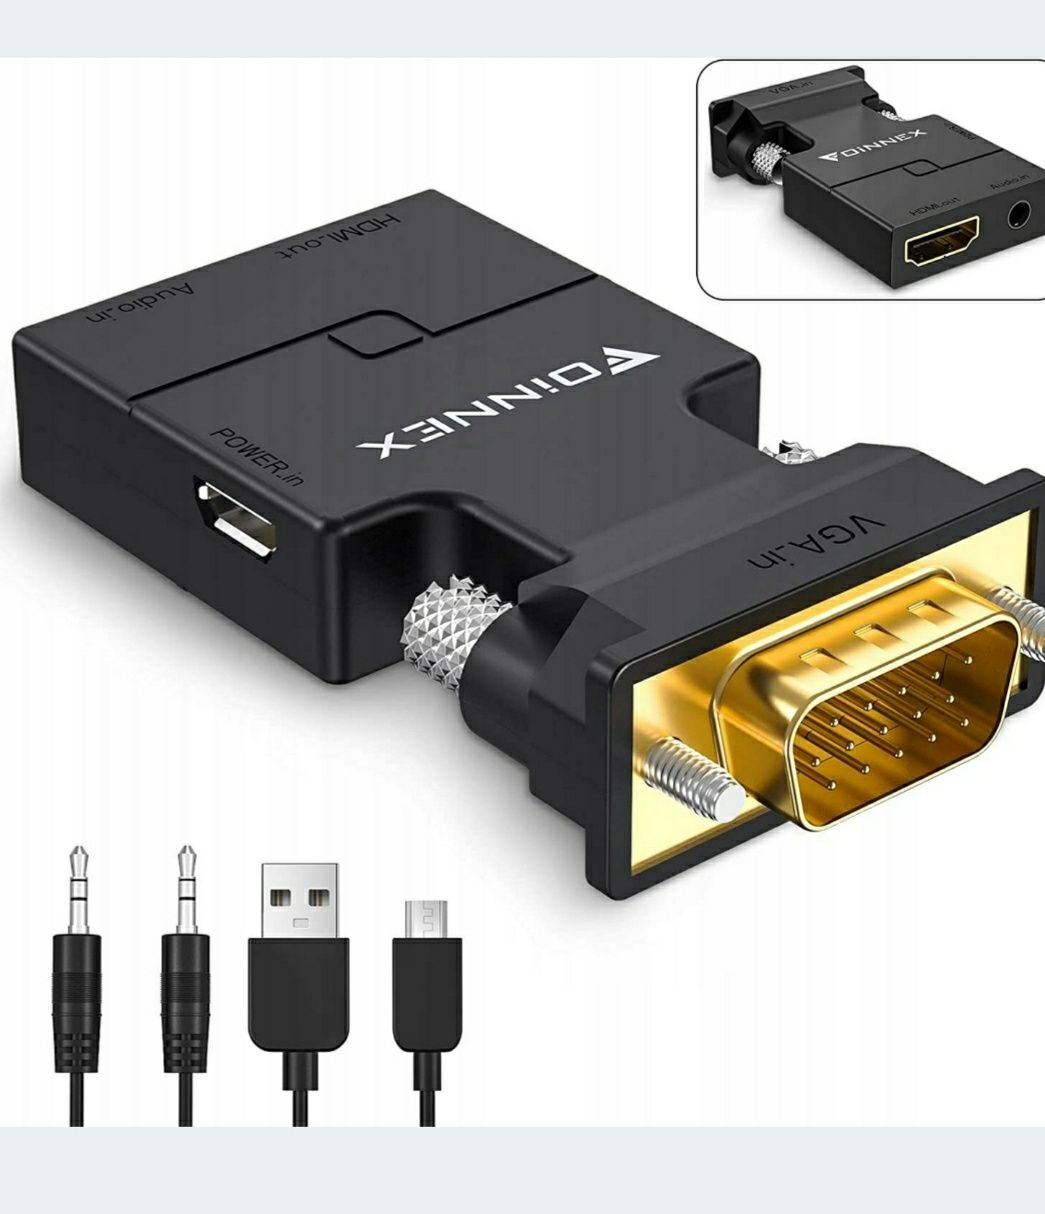 Przejściówka adapter FOINNEX VGA DO HDMI + AUDIO